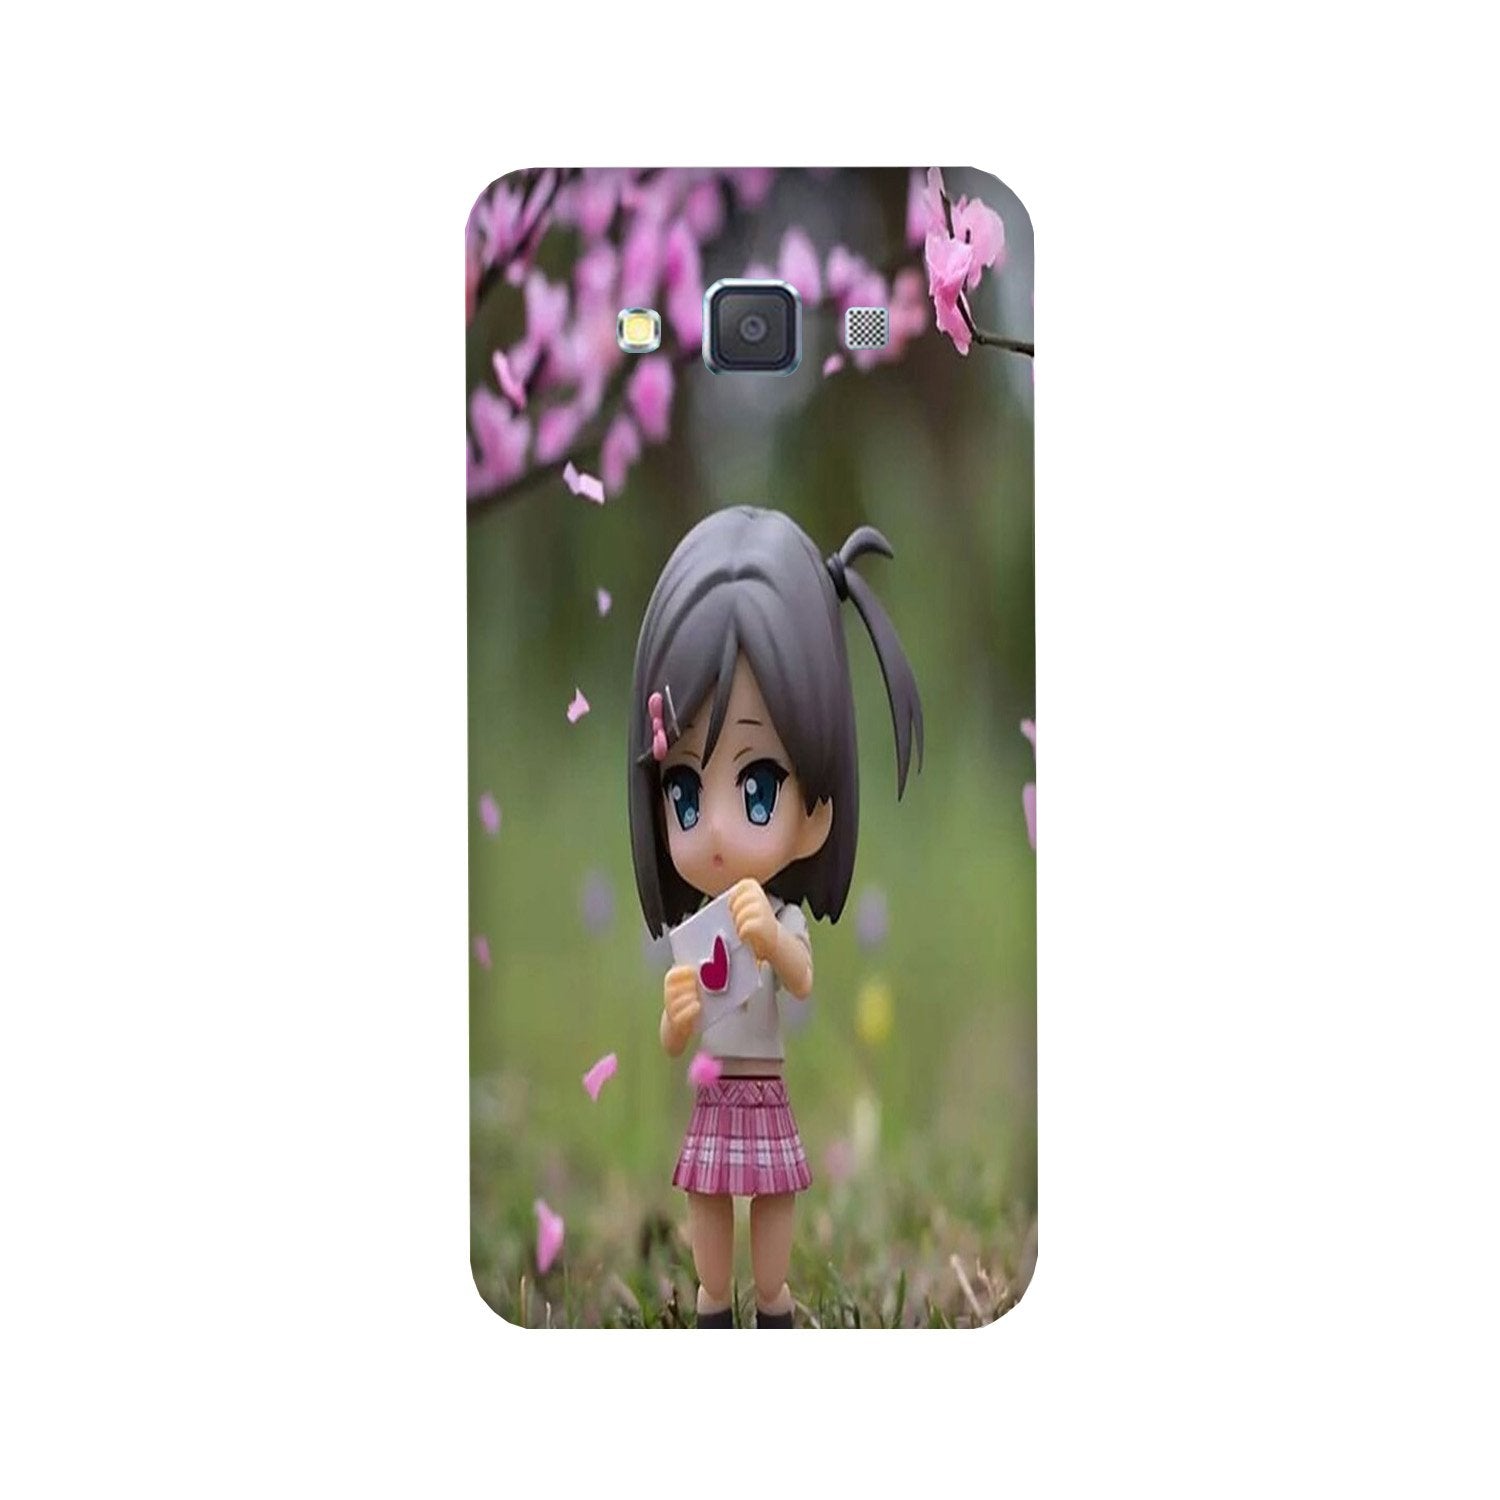 Cute Girl Case for Galaxy E5